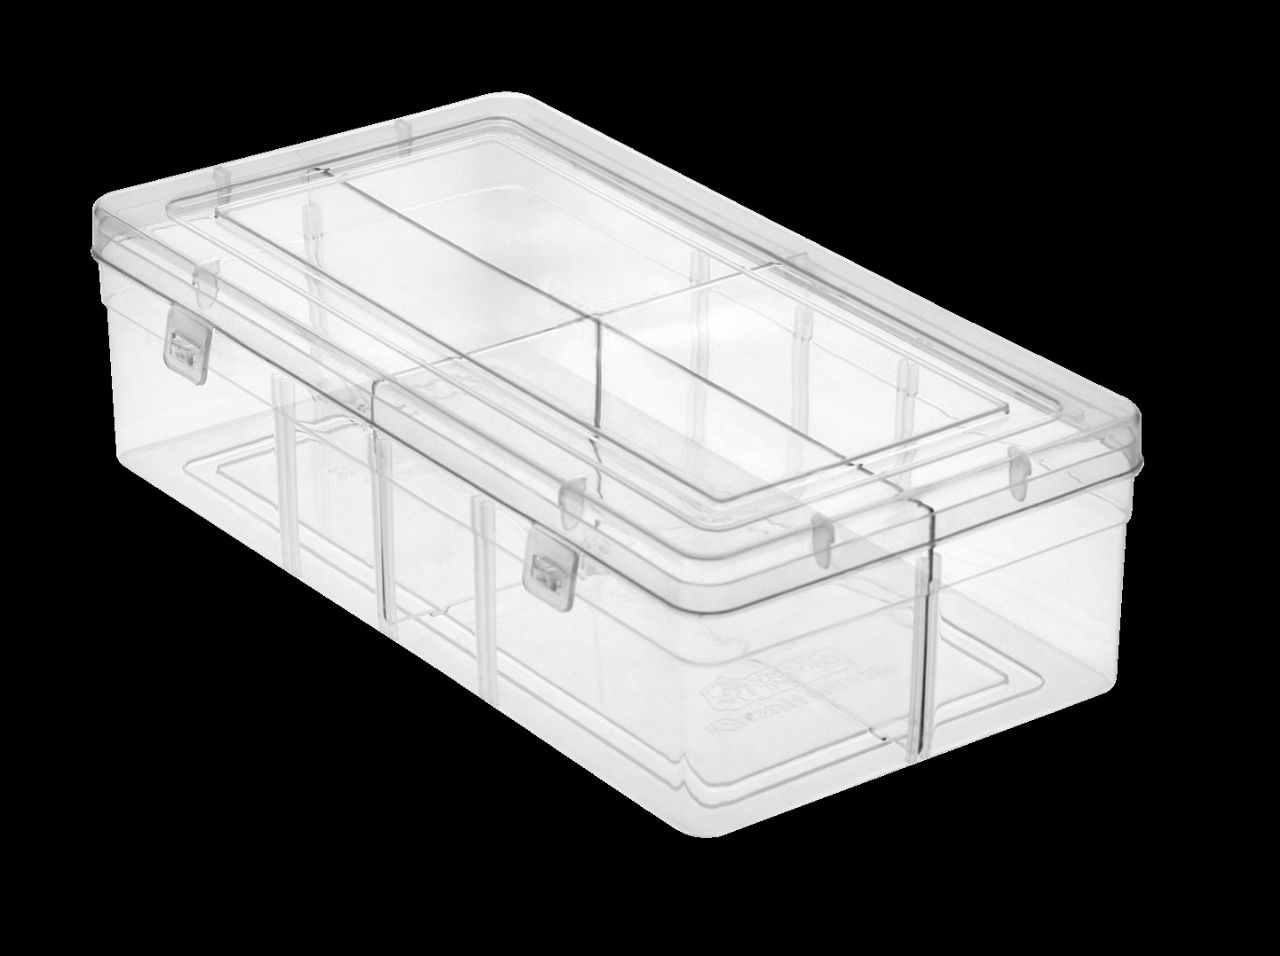 Adjustable Multi Purpose Plastic Storage Box